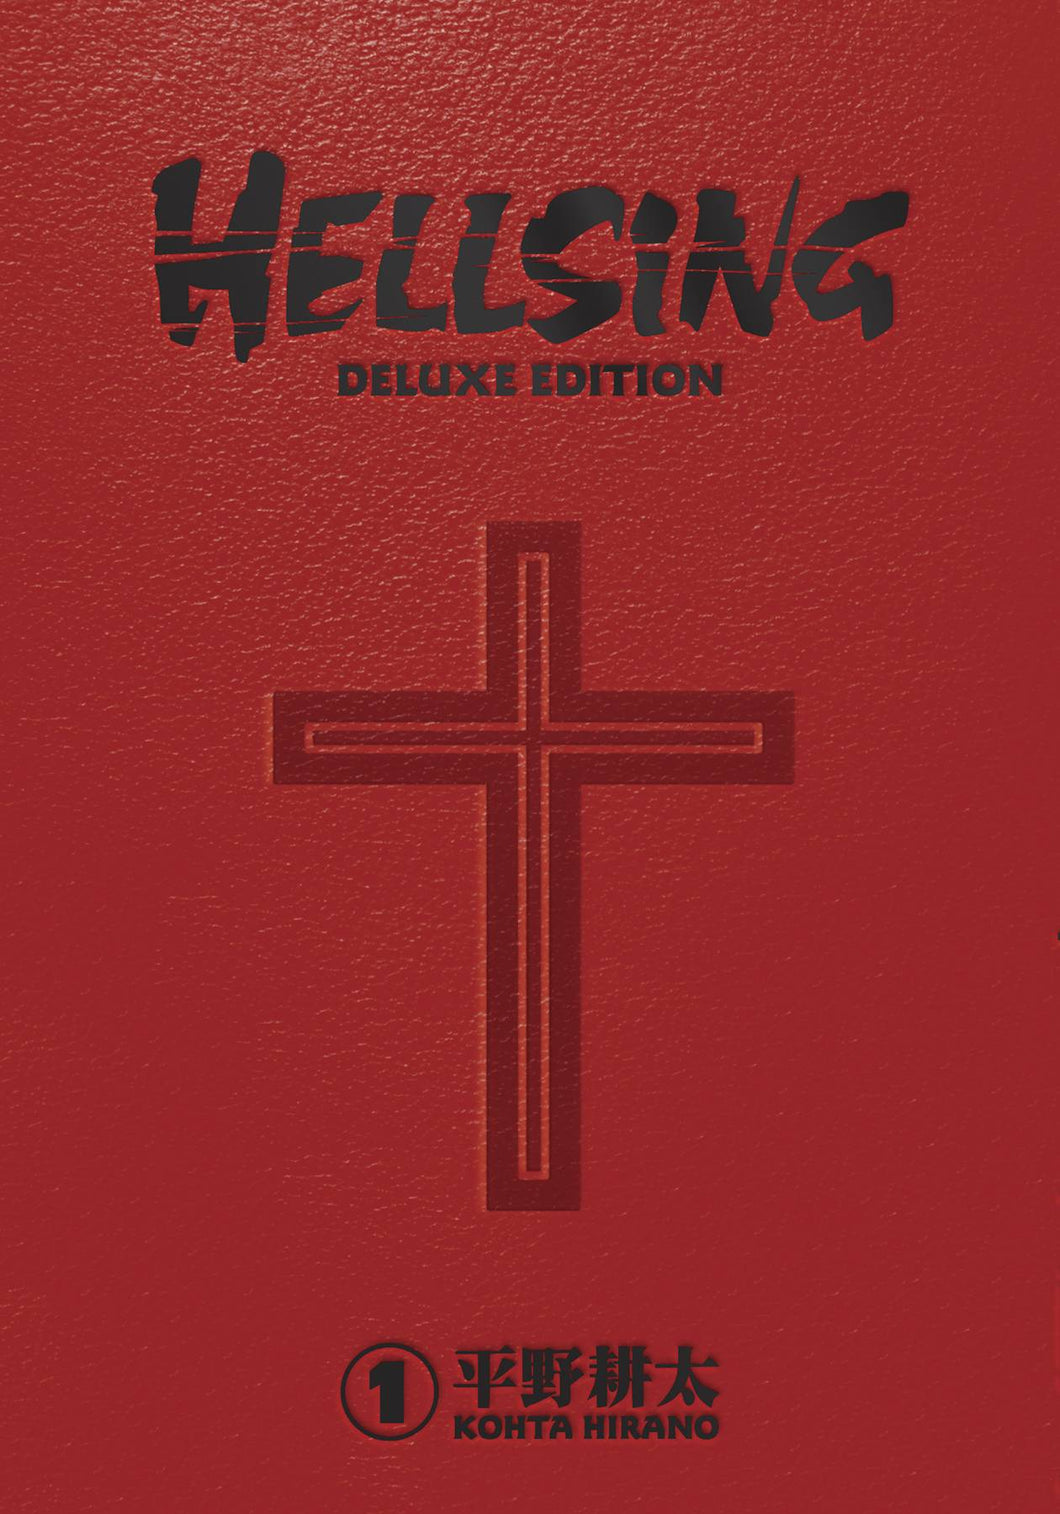 Hellsing Deluxe Edition Hc Vol 01